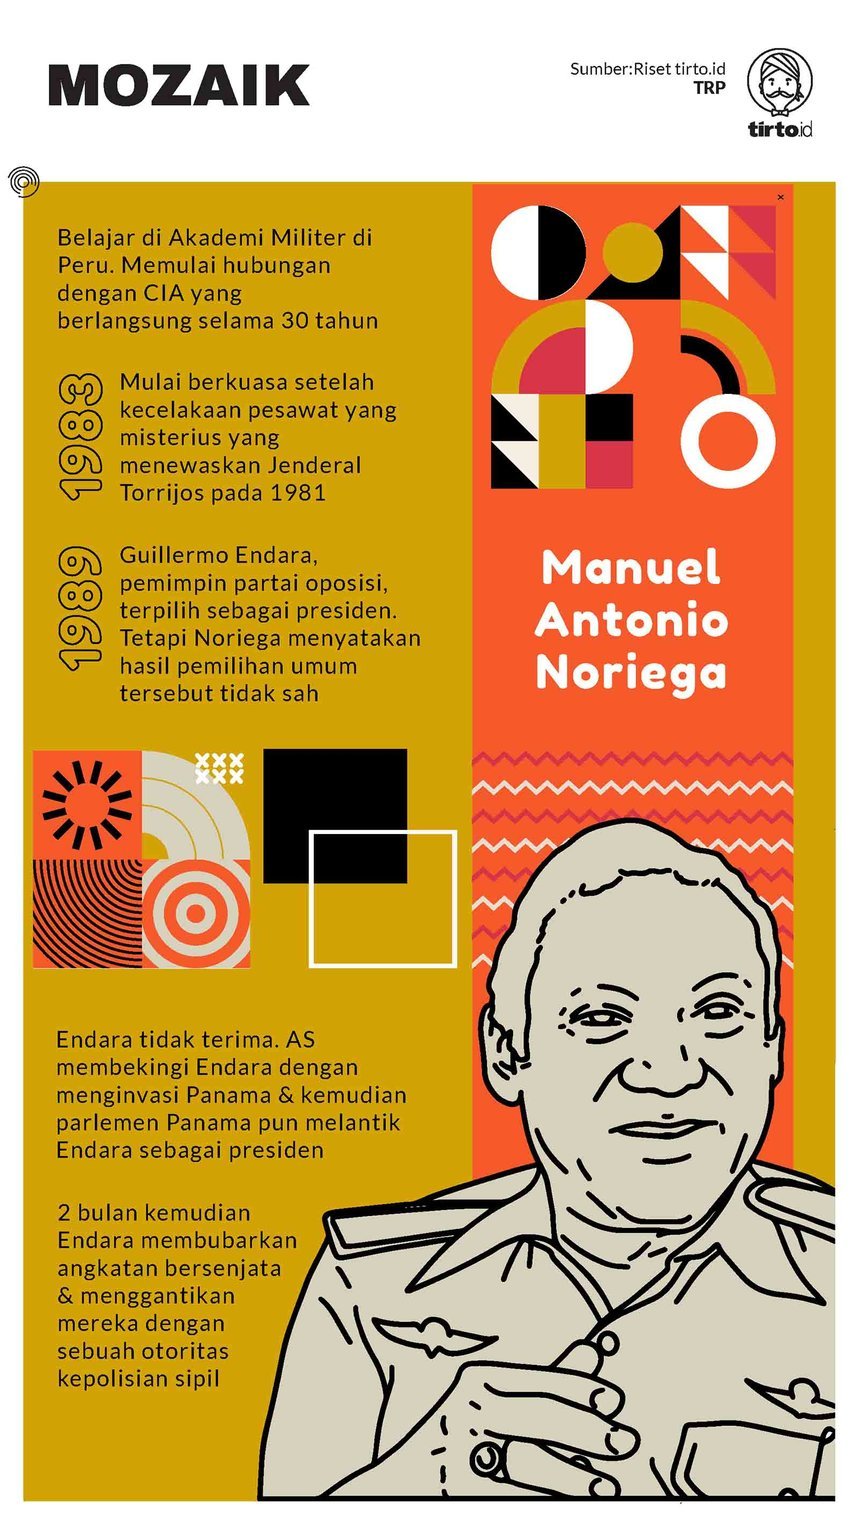 Infografik Mozaik Manuel Antonio Noriega